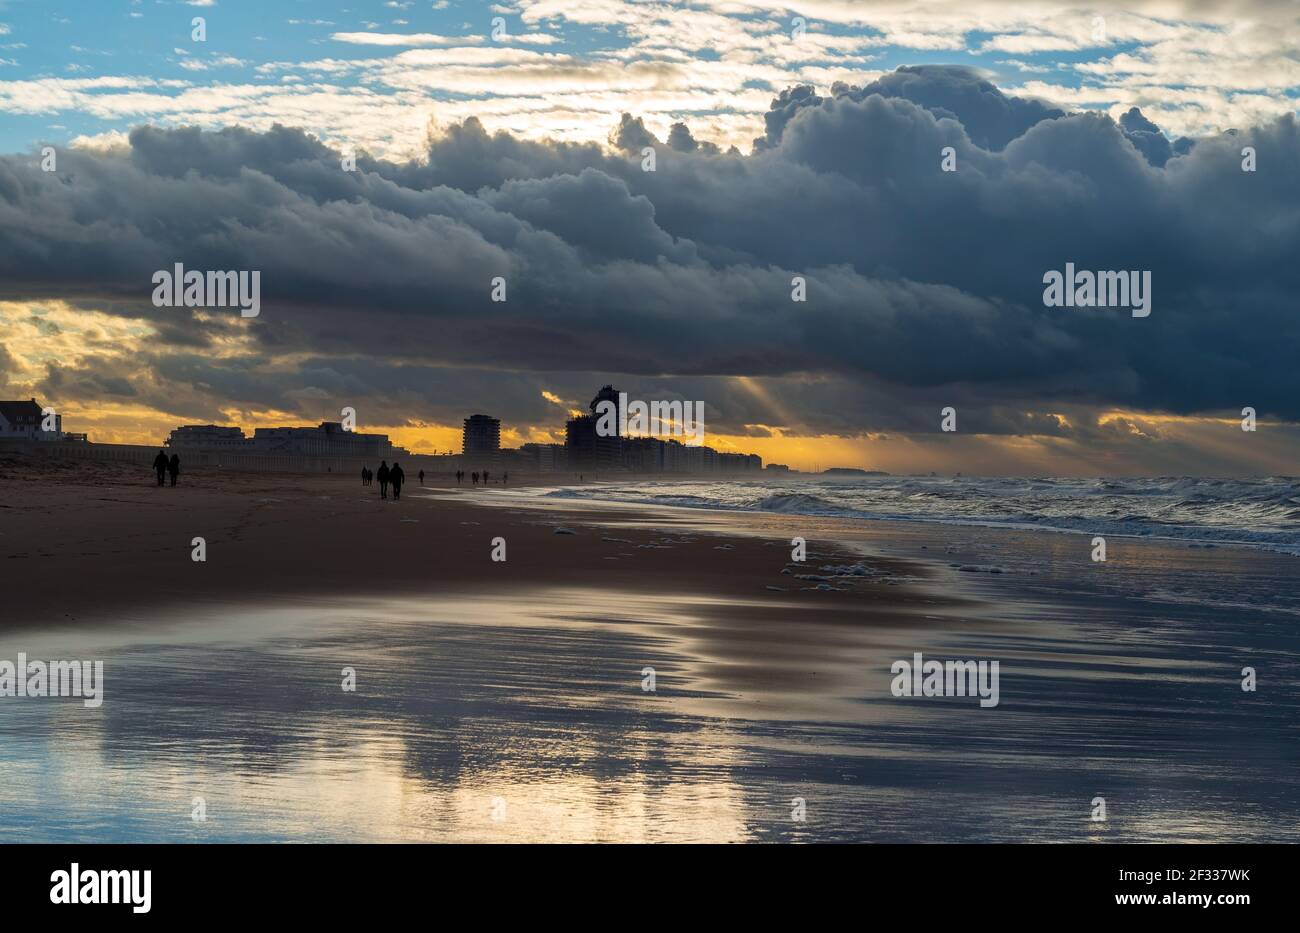 Oostende (Ostende) Strand mit Sturm Wetter und Menschen Silhouette Spaziergang an der Nordsee, Belgien. Stockfoto